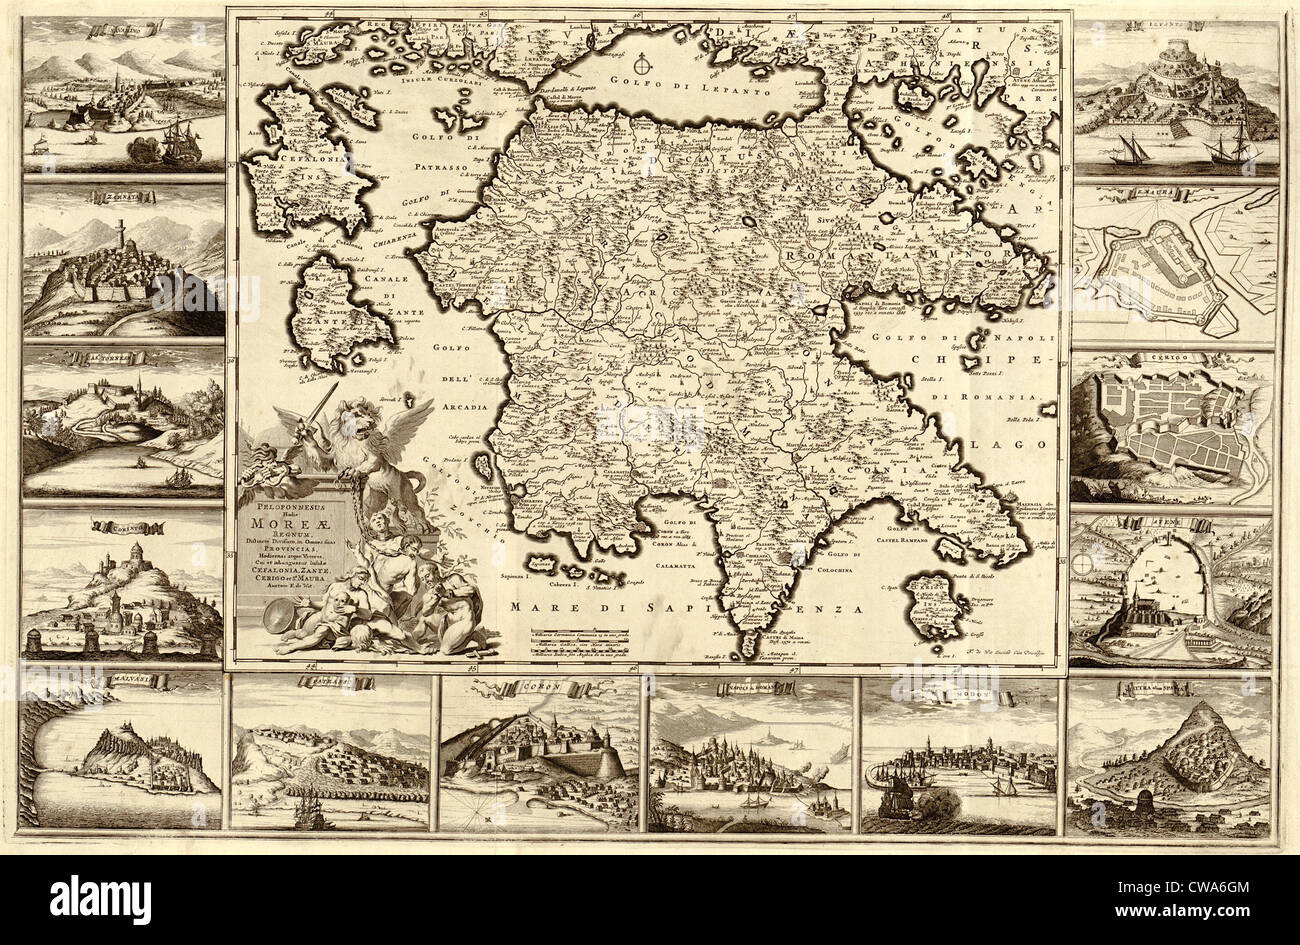 1688 mappa della penisola Peloponneso meridionale della Grecia. Confini mappa contengono delle incisioni di città fortificata viste, parte del Foto Stock